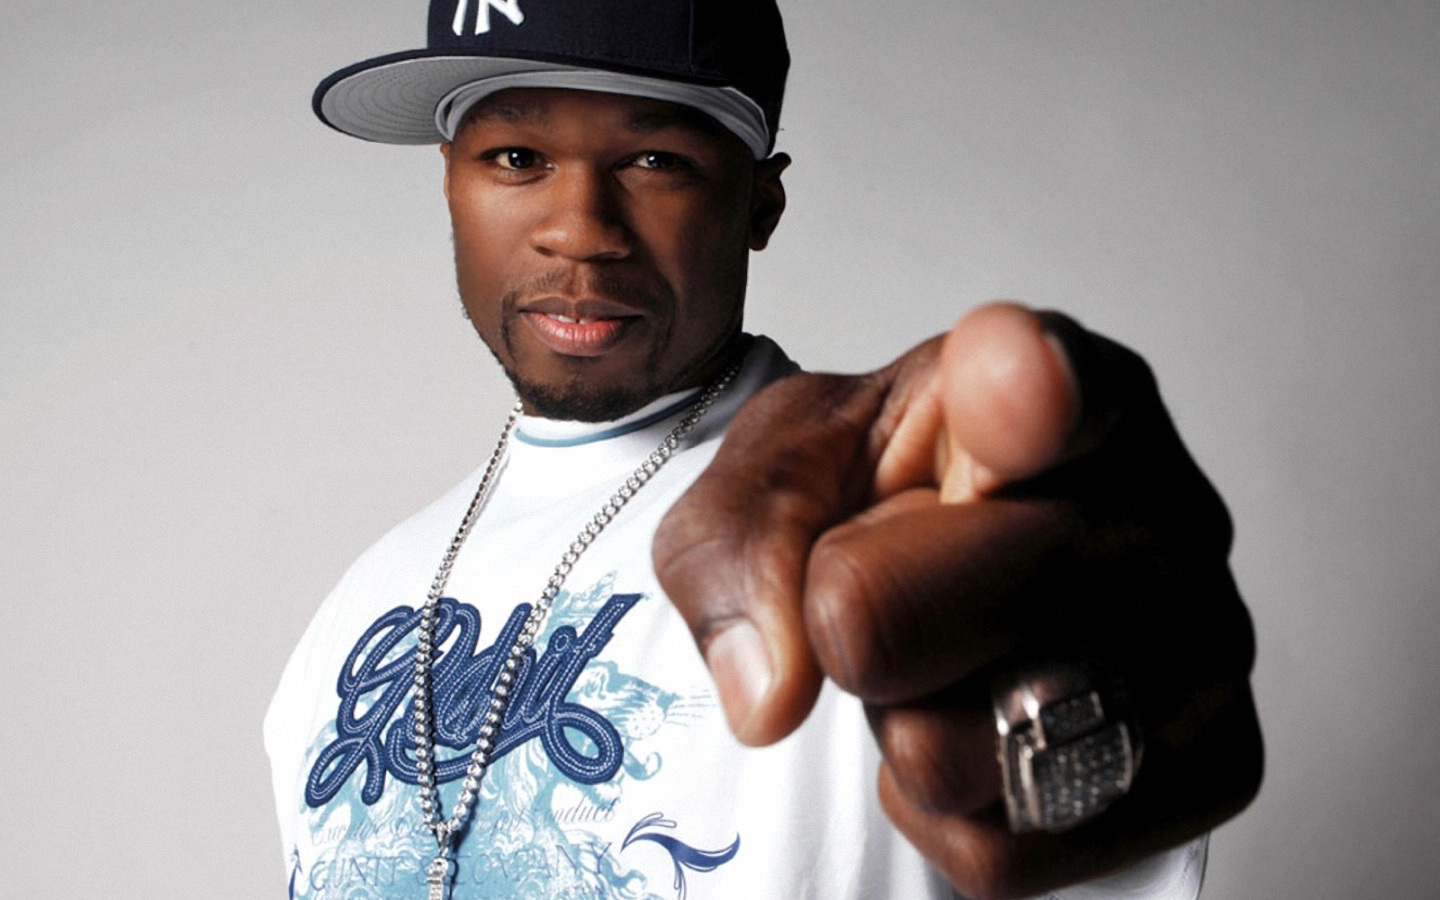 Фотография 50 Cent 11 из 23 - Hazzen.